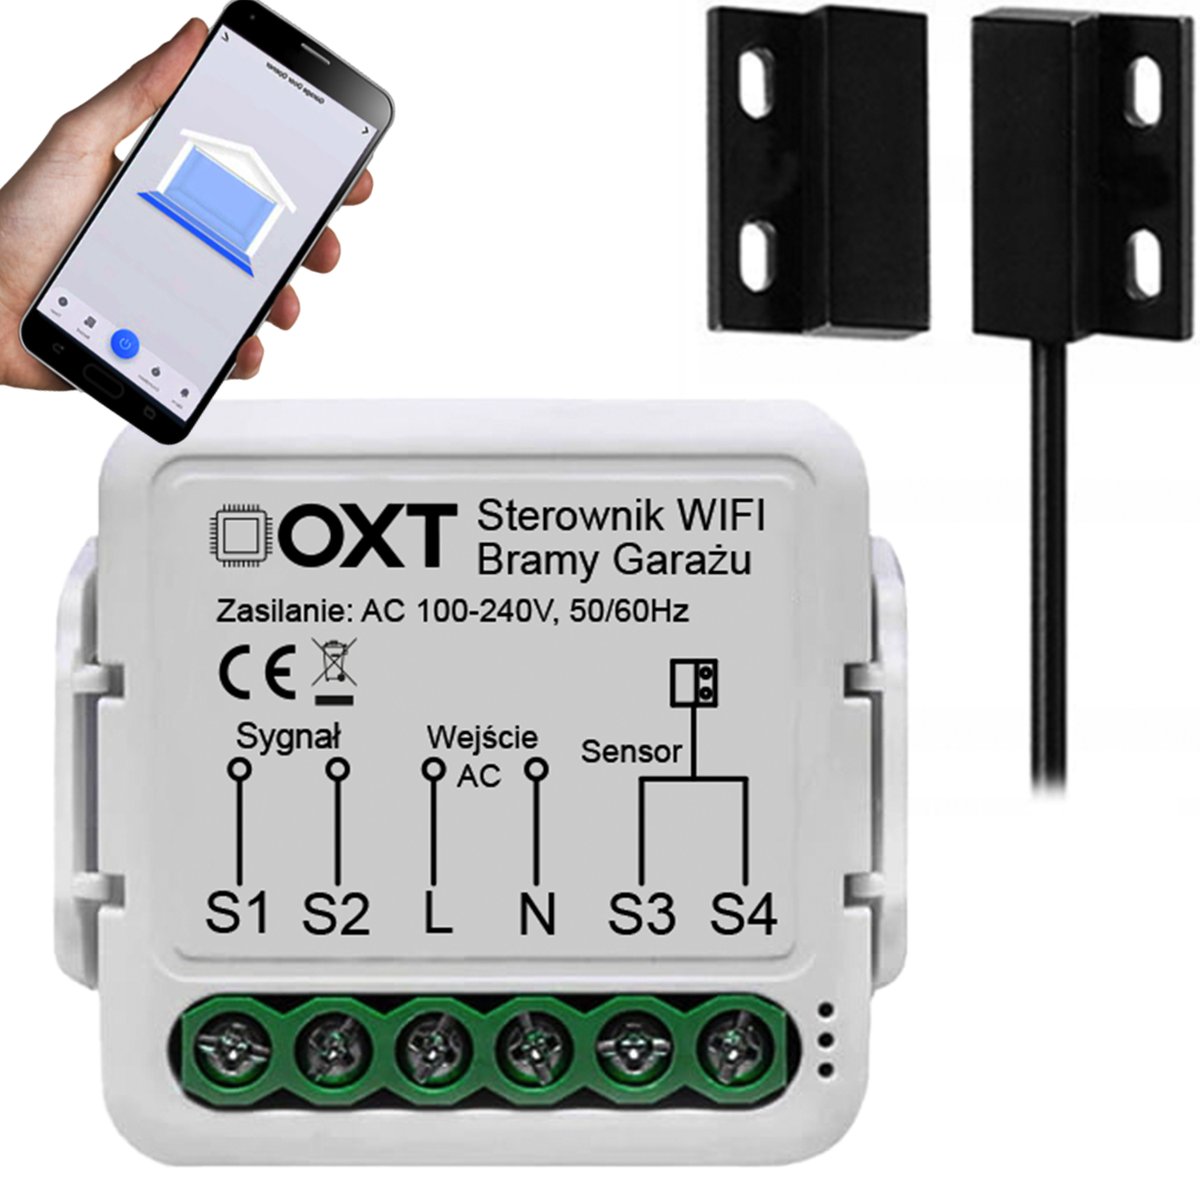 Zdjęcia - Włącznik Tuya Moduł OXT z Sensorem Kontaktronem do Bramy Garażu WiFi 